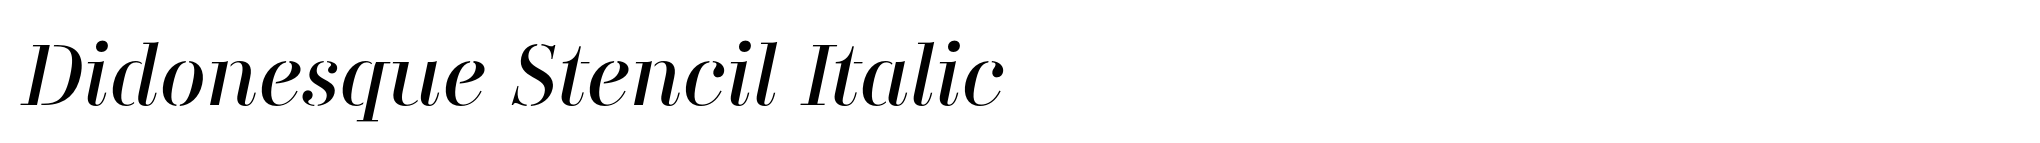 Didonesque Stencil Italic image